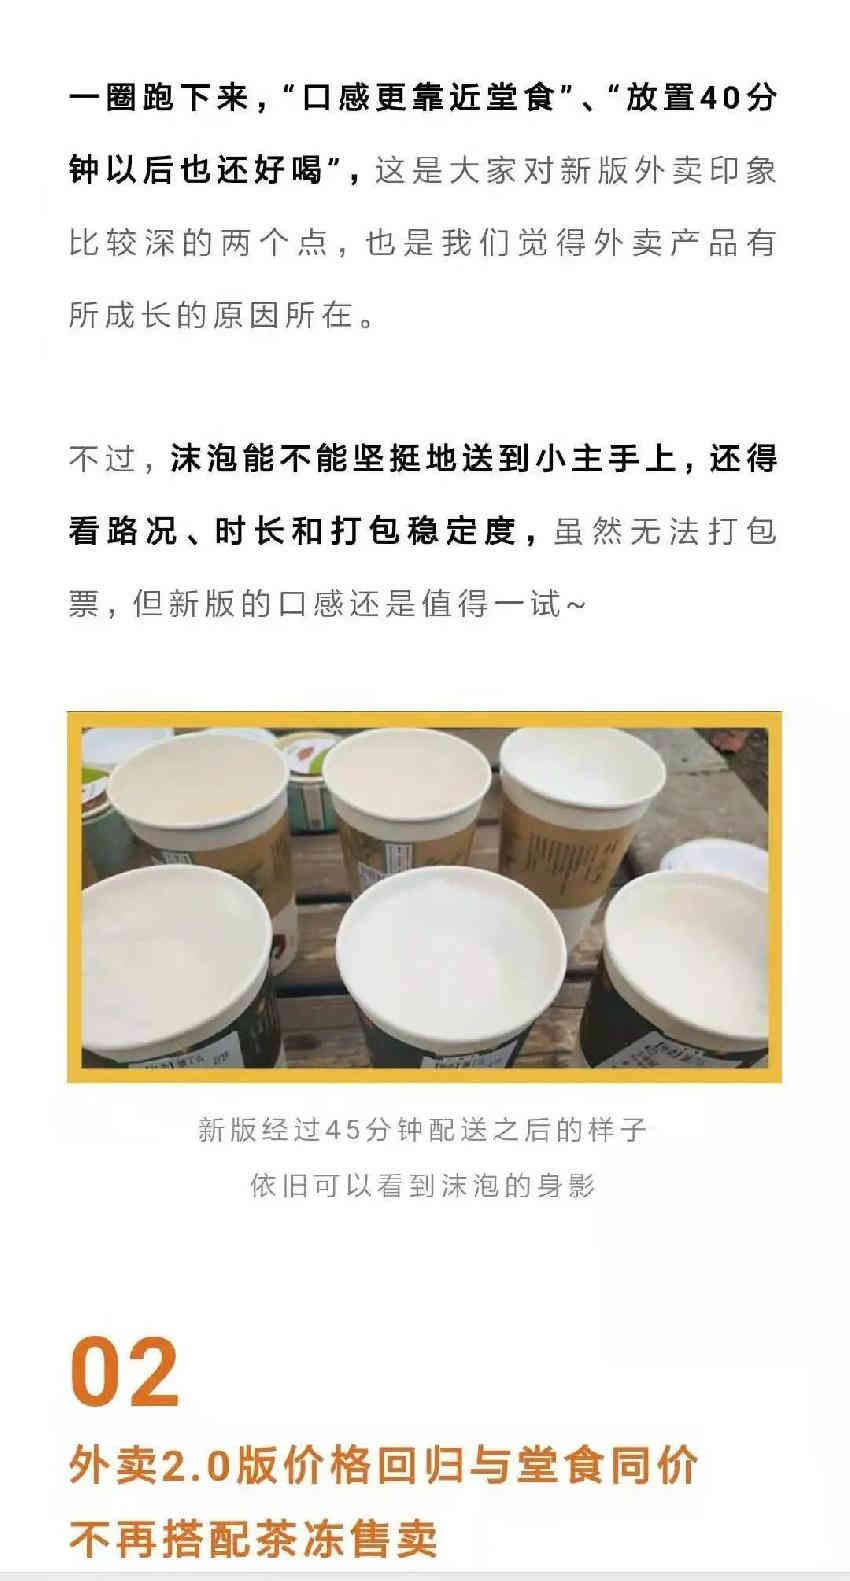  武汉茶颜开店的第二周 社区开始团购奶茶了